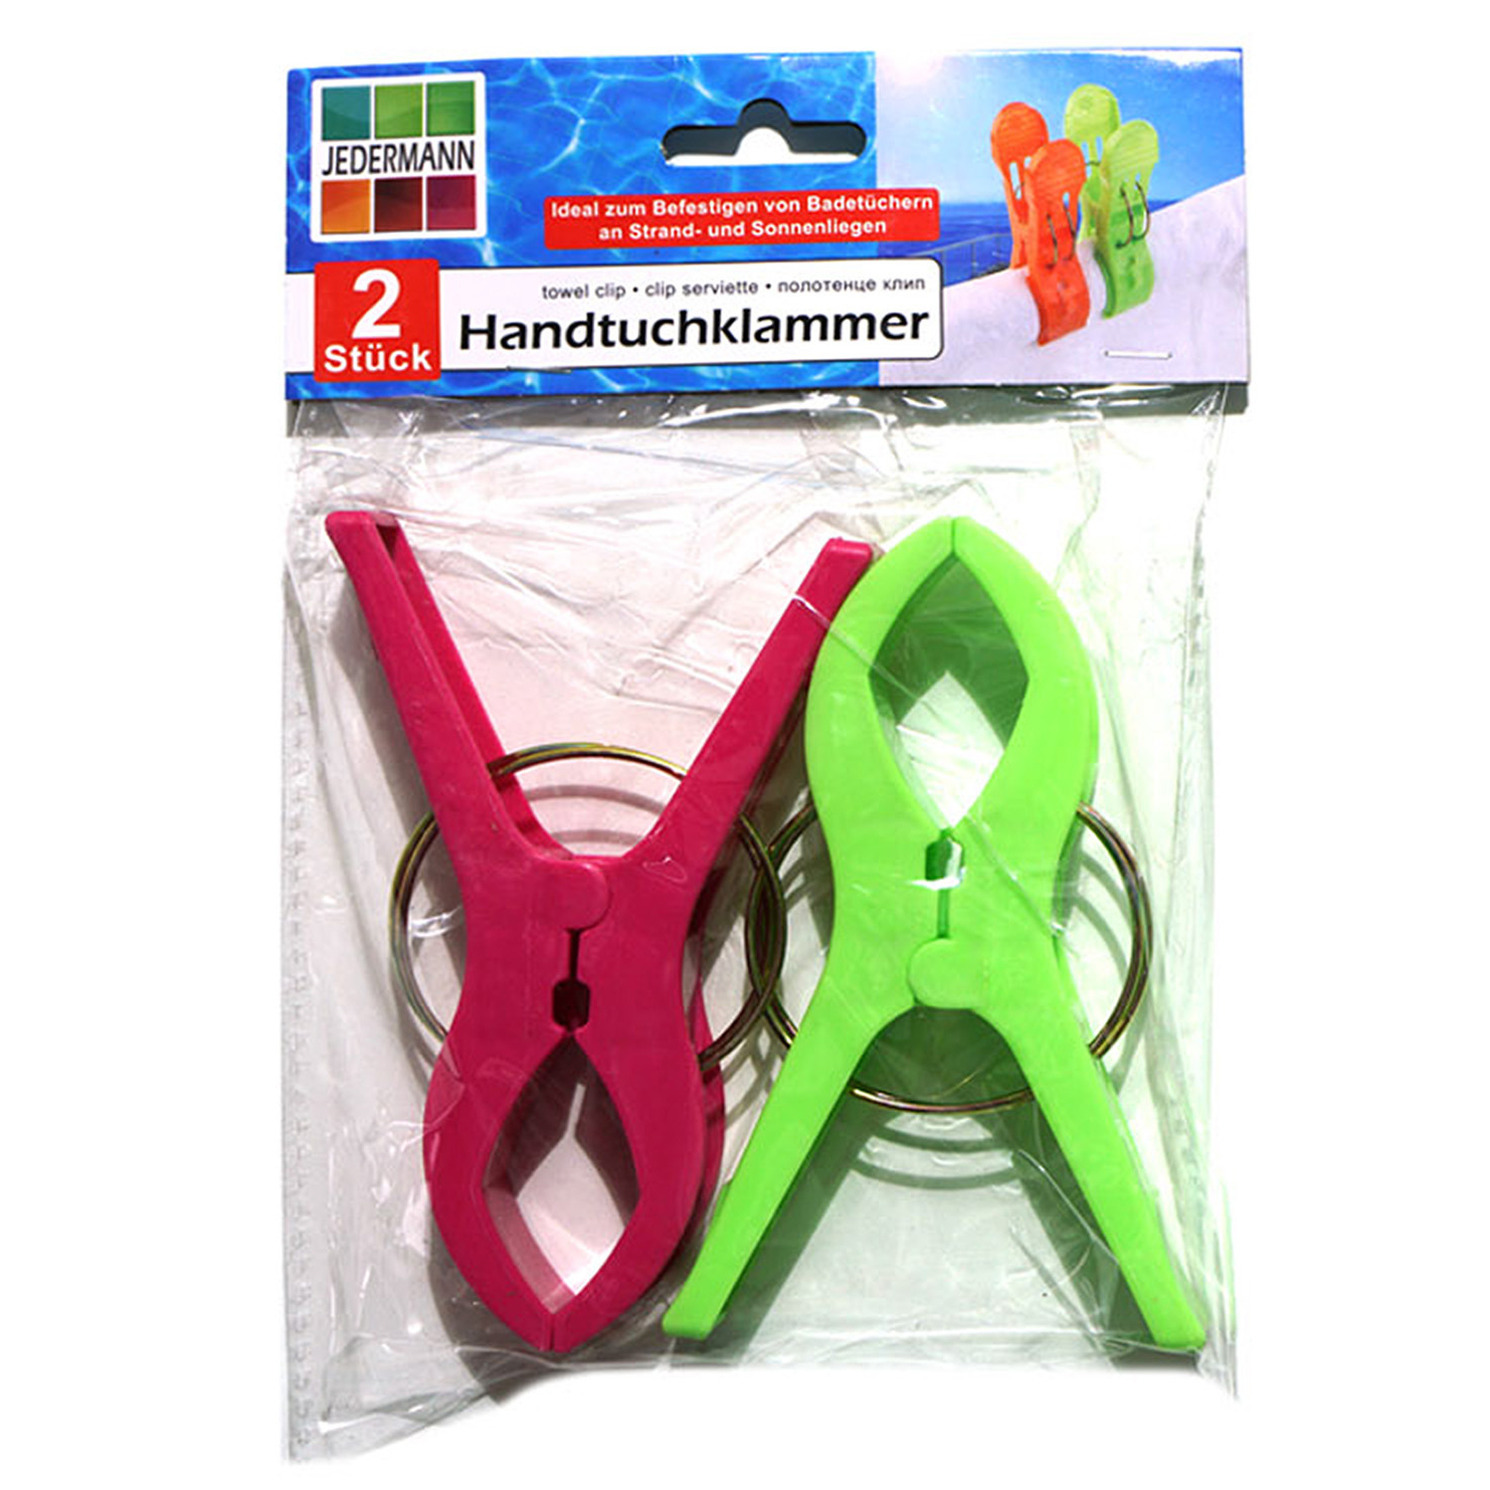 Handdoekknijpers XL 2x groen-roze kunststof 12 cm wasknijpers